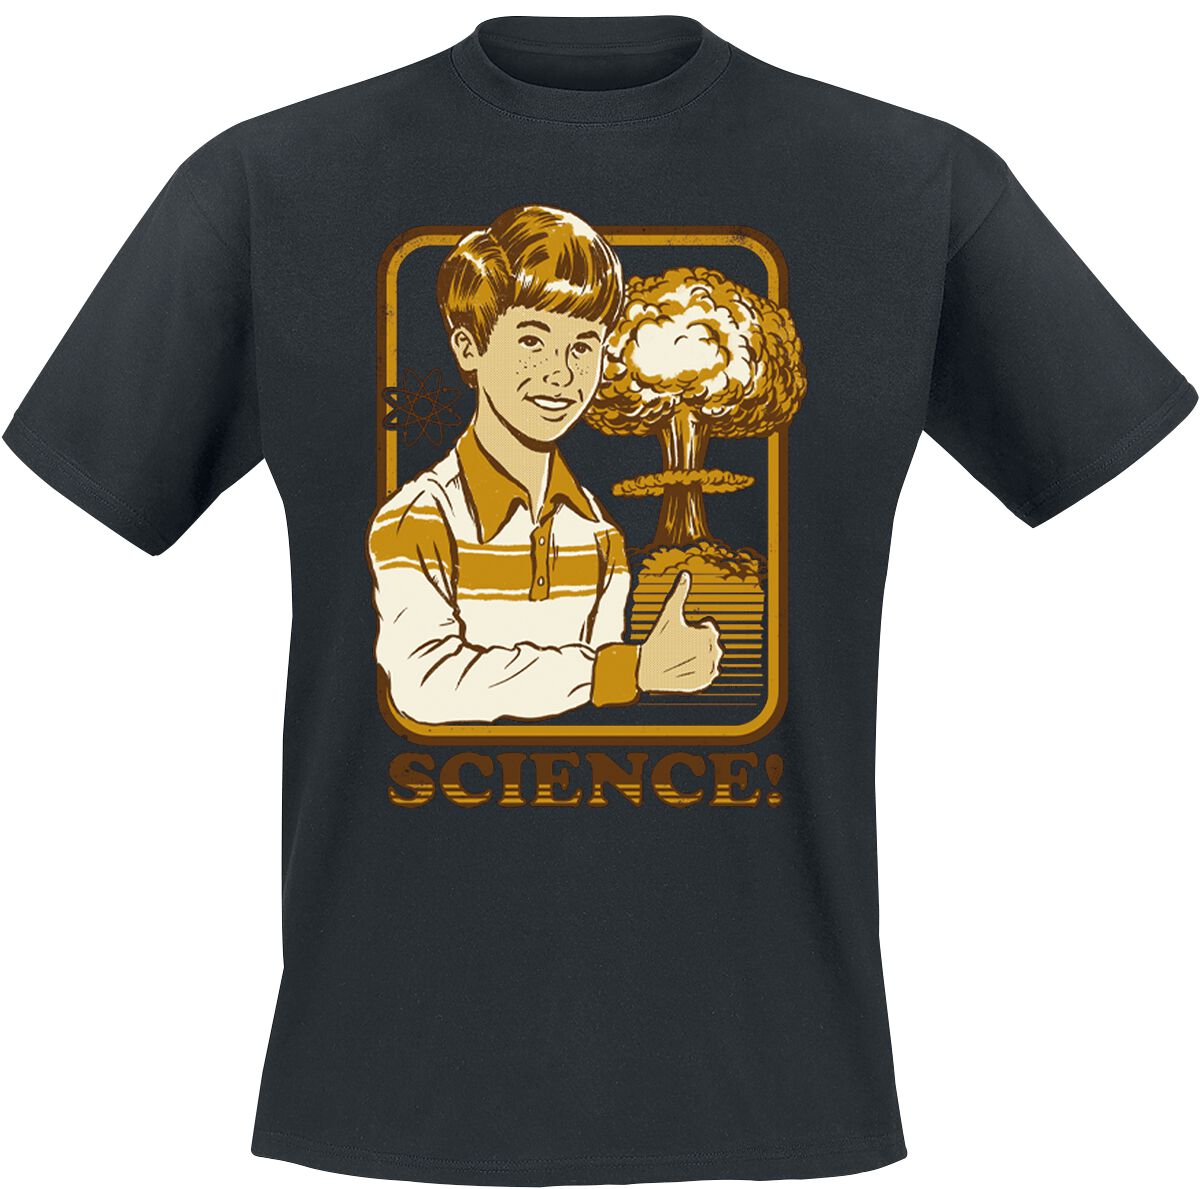 Steven Rhodes Science! T-Shirt schwarz in S